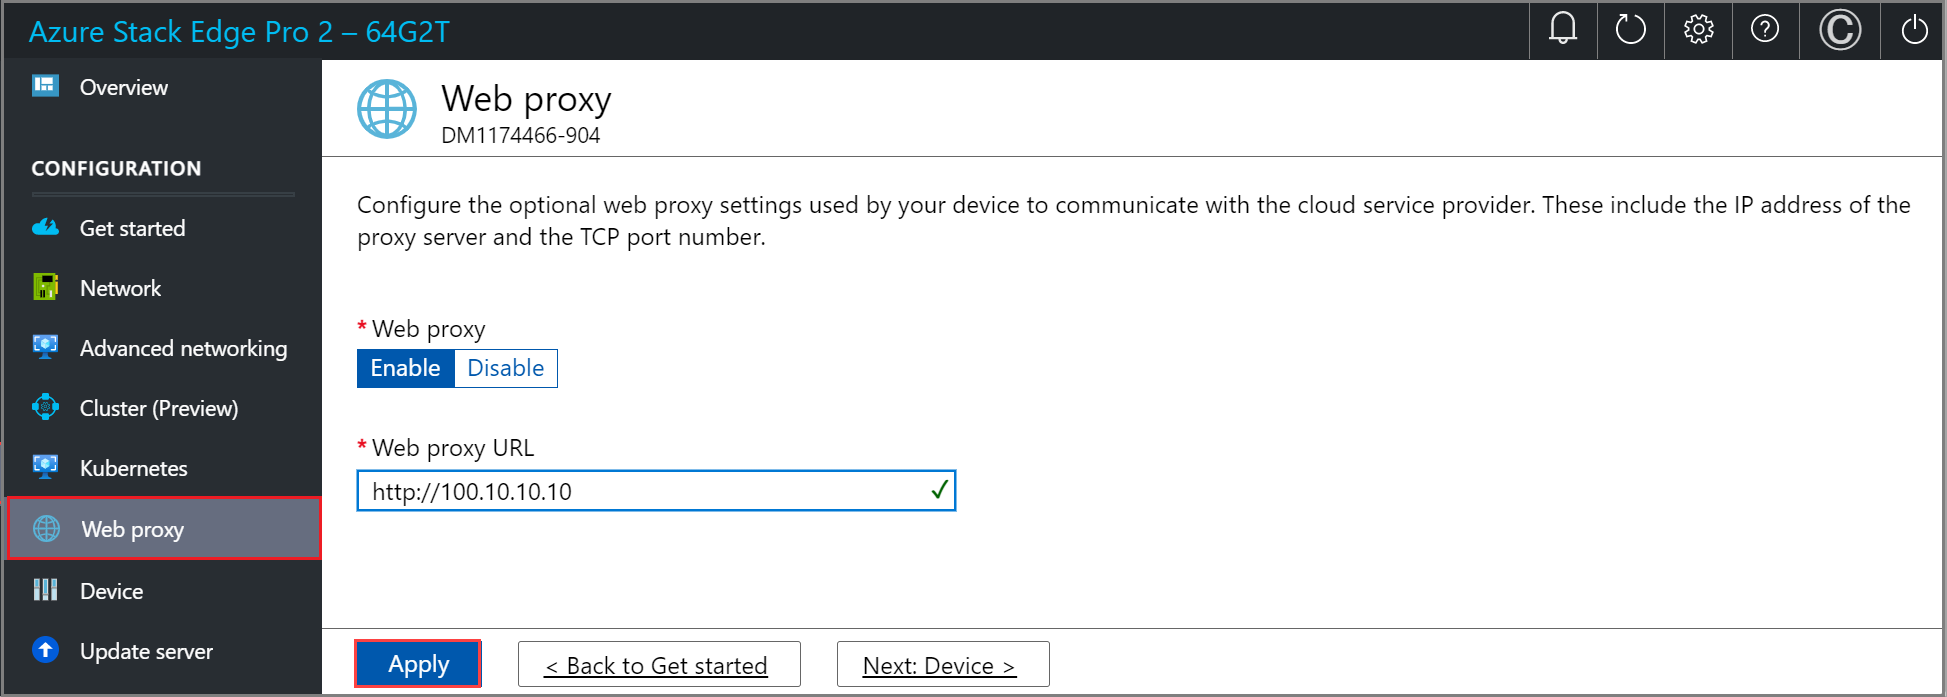 Captura de pantalla de la página del proxy web en la interfaz de usuario web local de un dispositivo Azure Stack Edge. El botón Aplicar está resaltado.